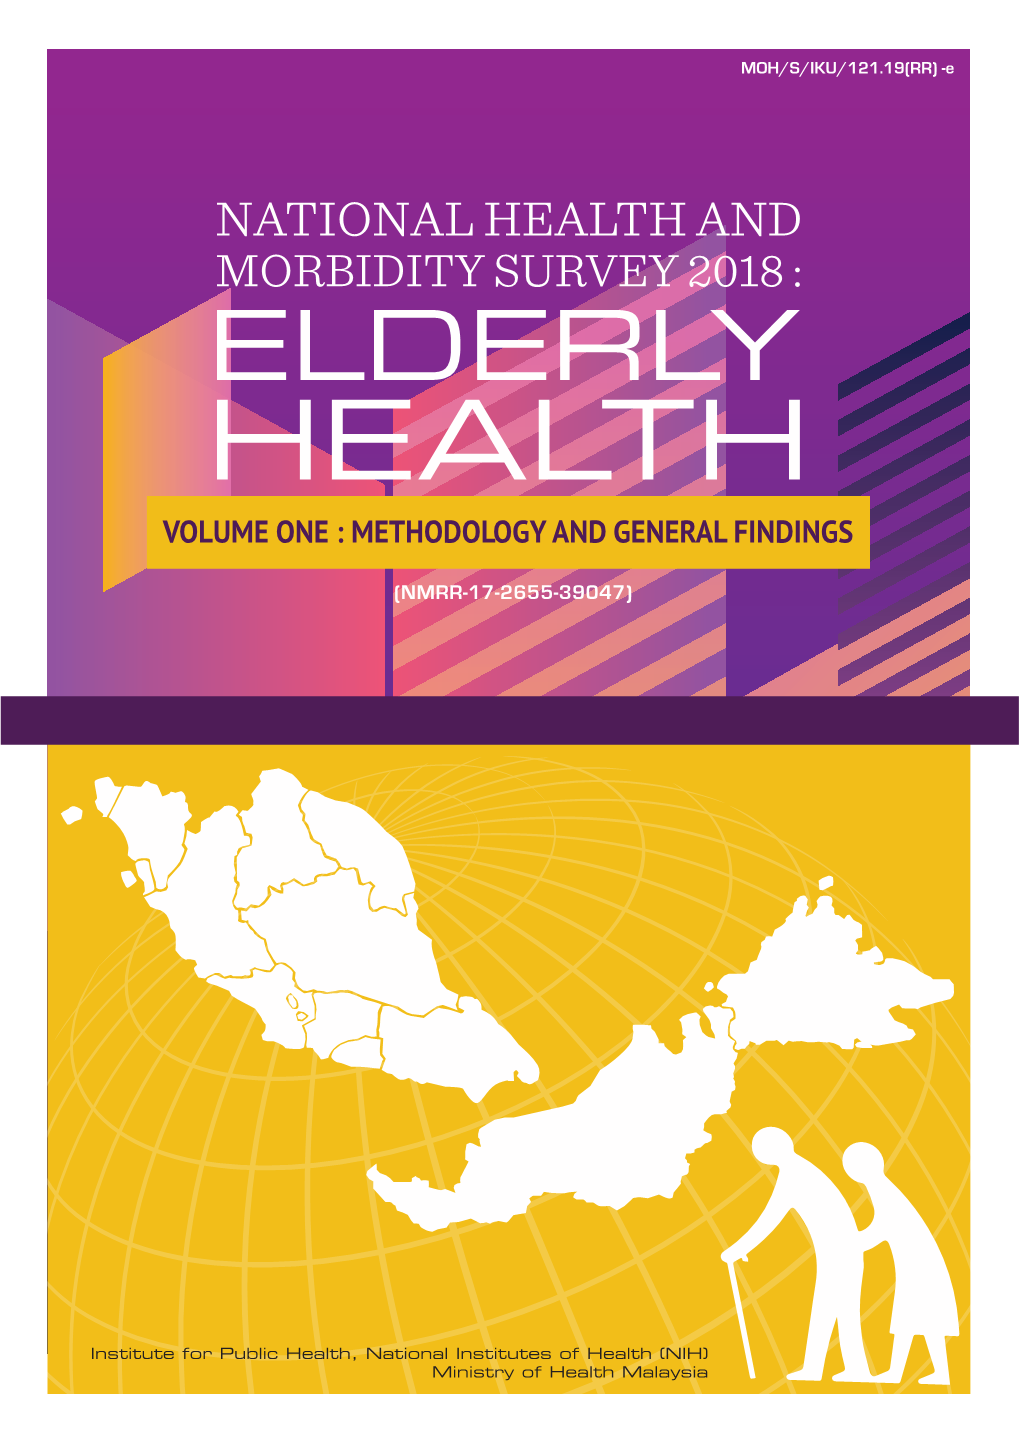 ELDERLY HEALTH VOLUME ONE : Methodology and General Findings